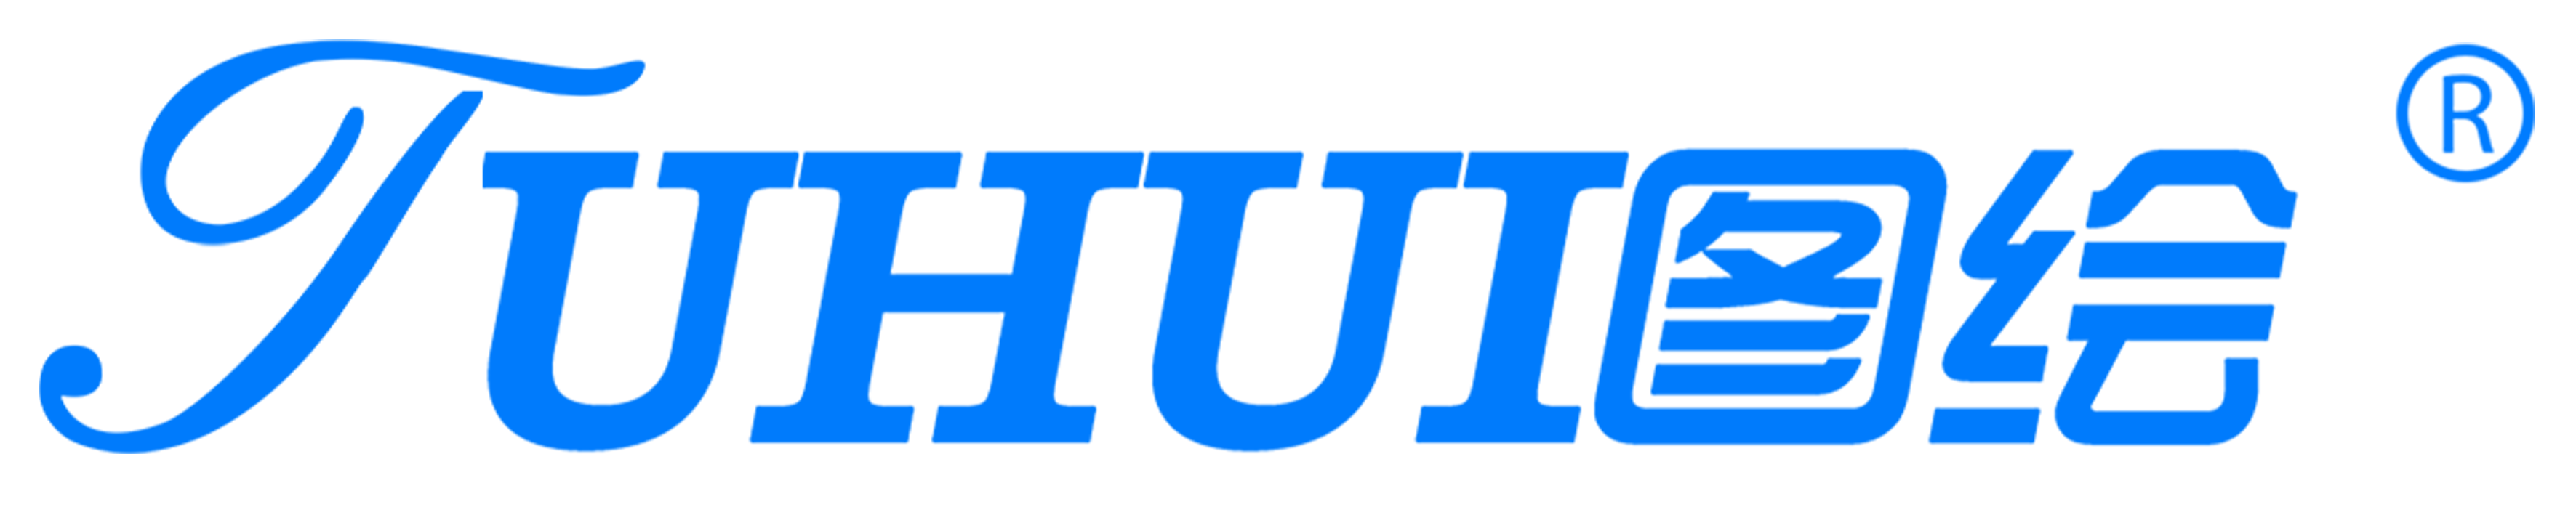 TUHUI Printer